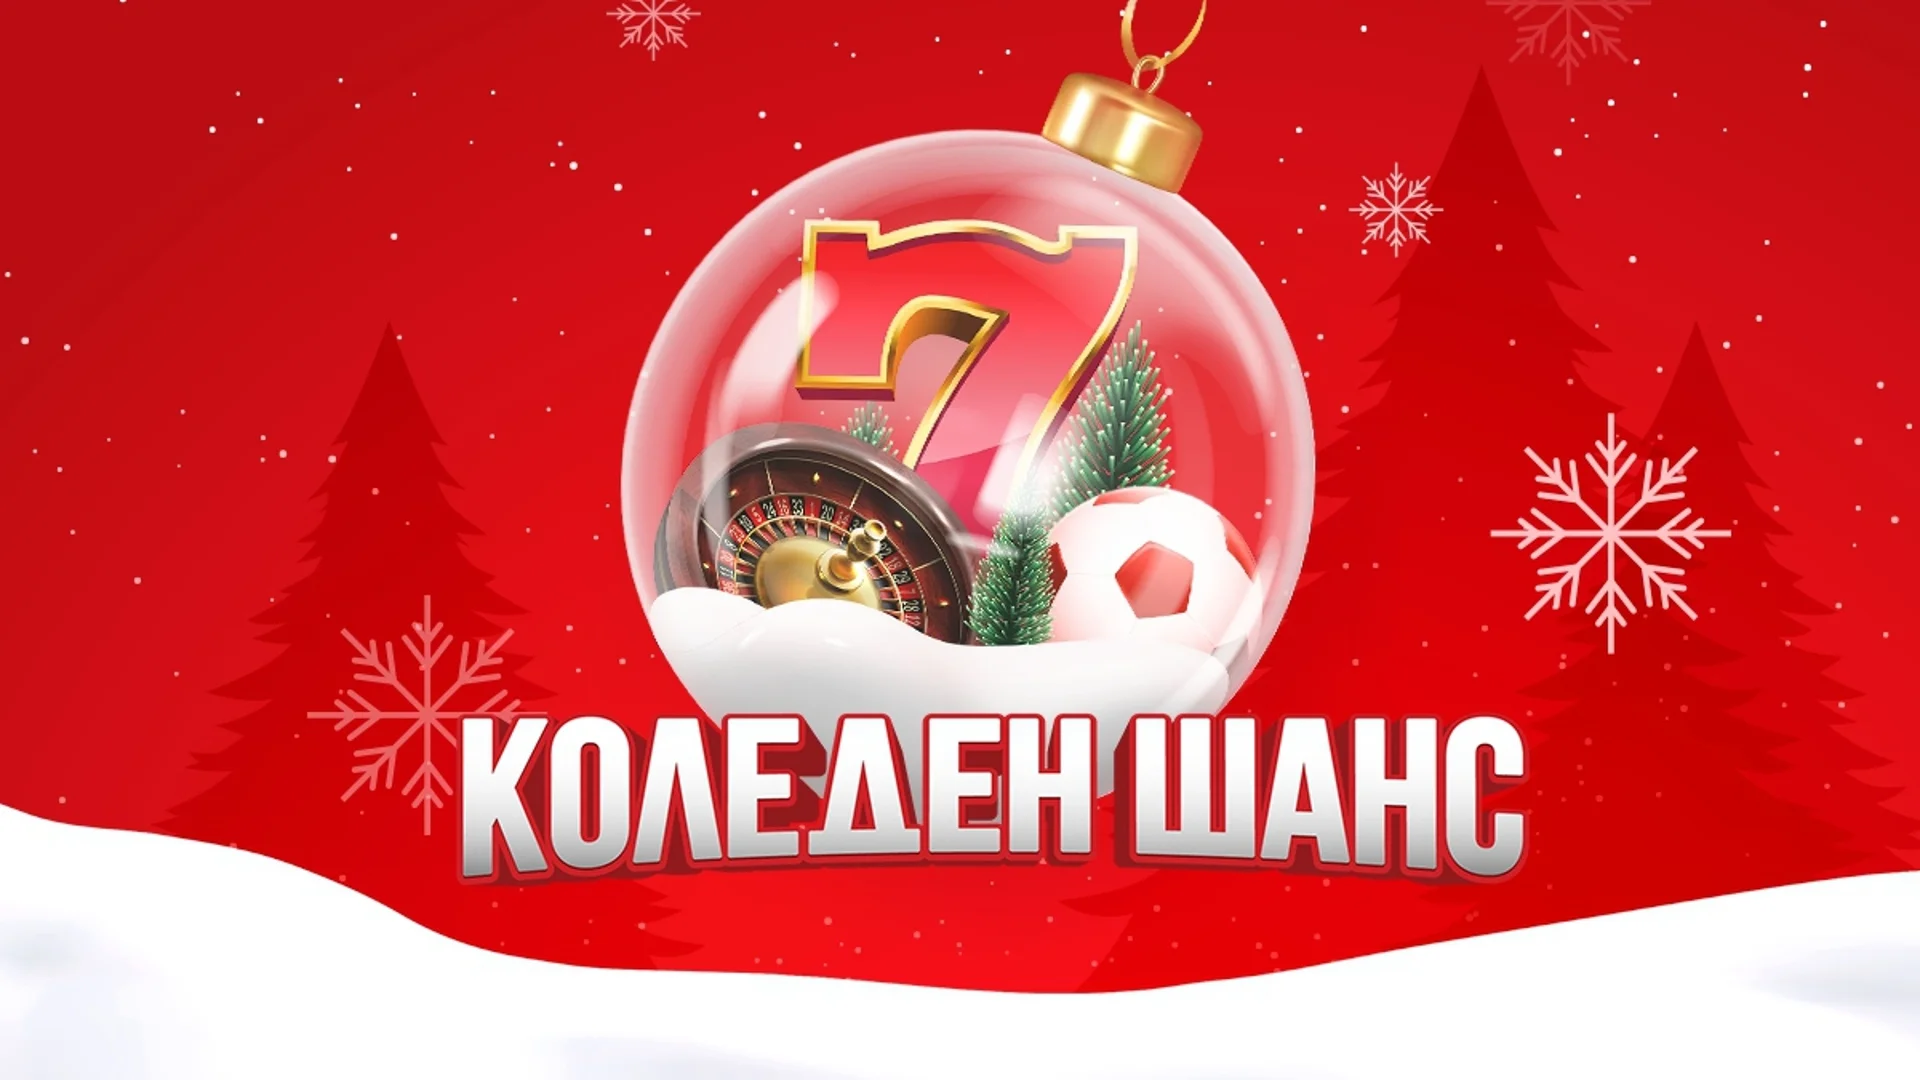 Коледен шанс на winbet.bg - многобройни изненади през декември в Казино, Live Казино и Спорт